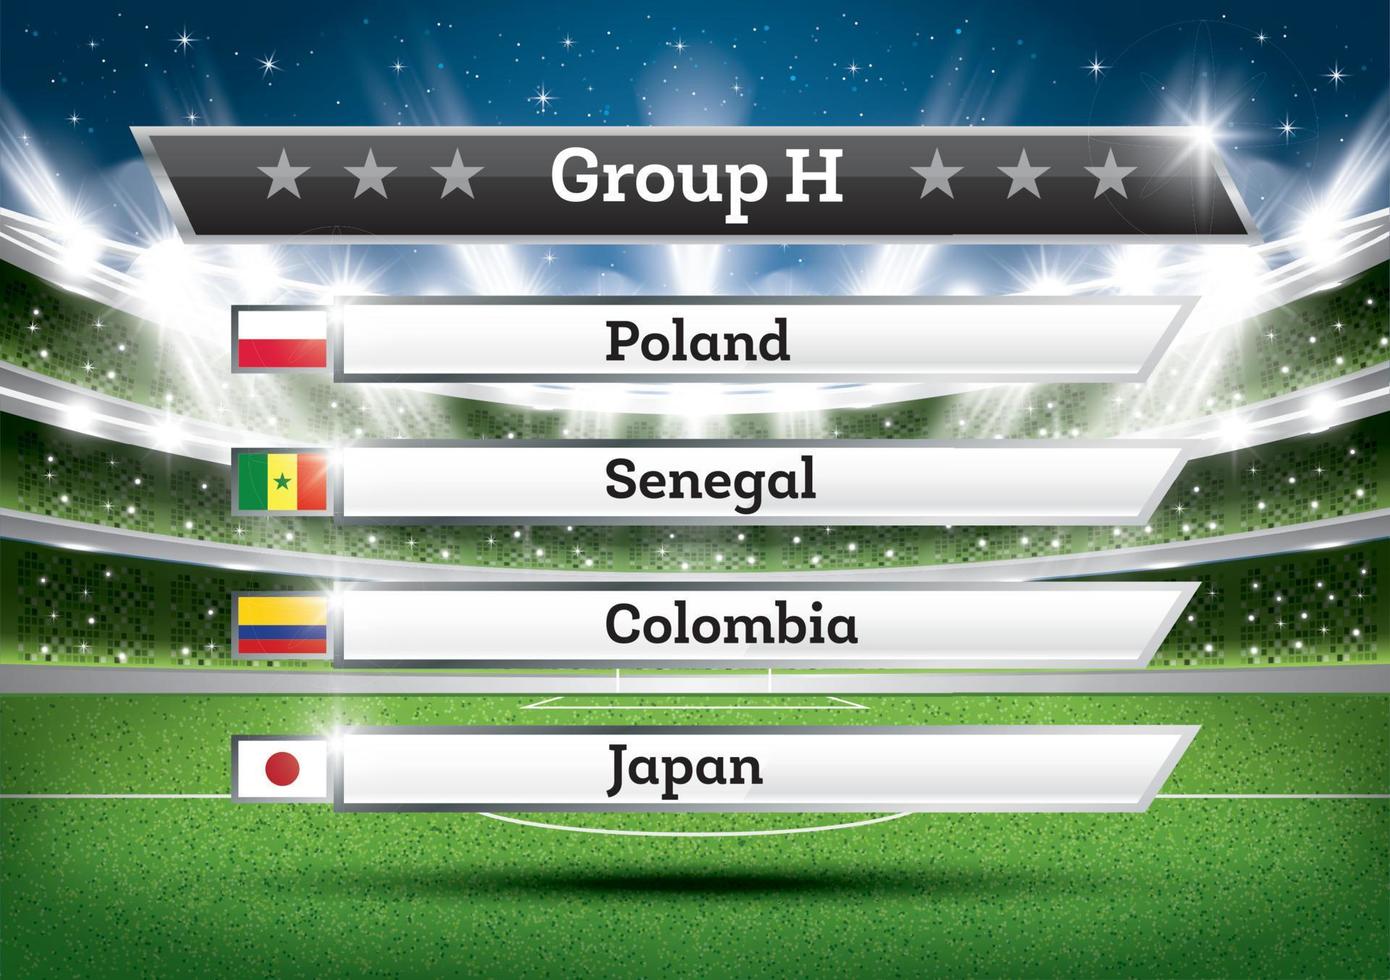 campeonato de futbol grupo h. torneo mundial de futbol. dibujar resultado. vector